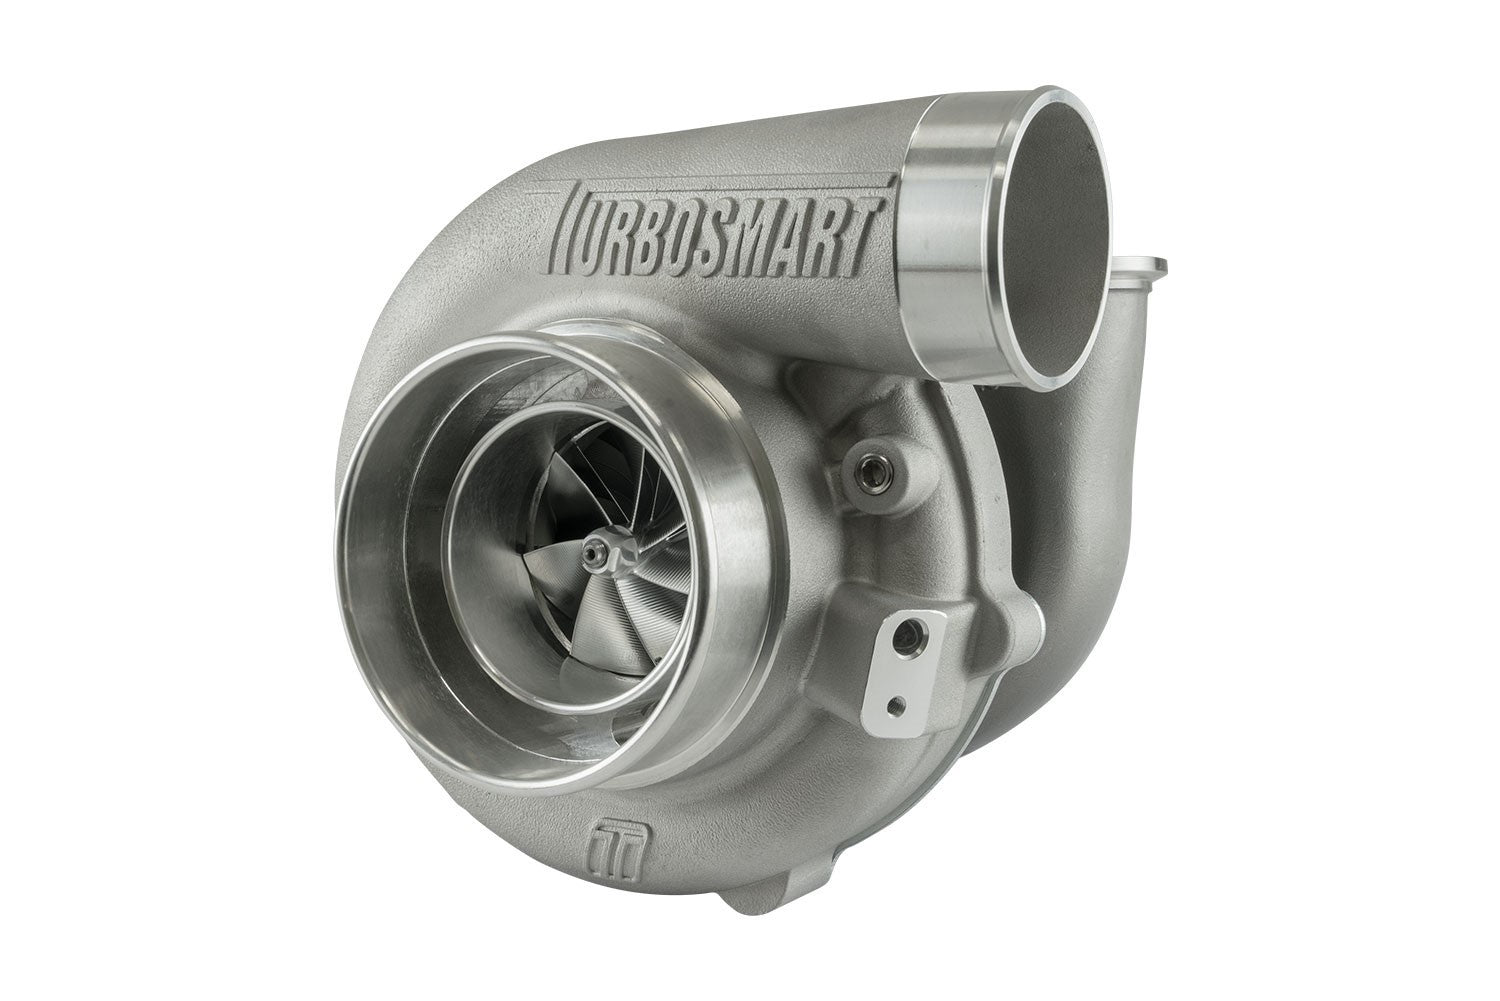 Turbosmart Oil Cooled 5862 V-Band Inlet/Outlet A/R 0.82 External Wastegate Turbocharger TS-1-5862VB082E